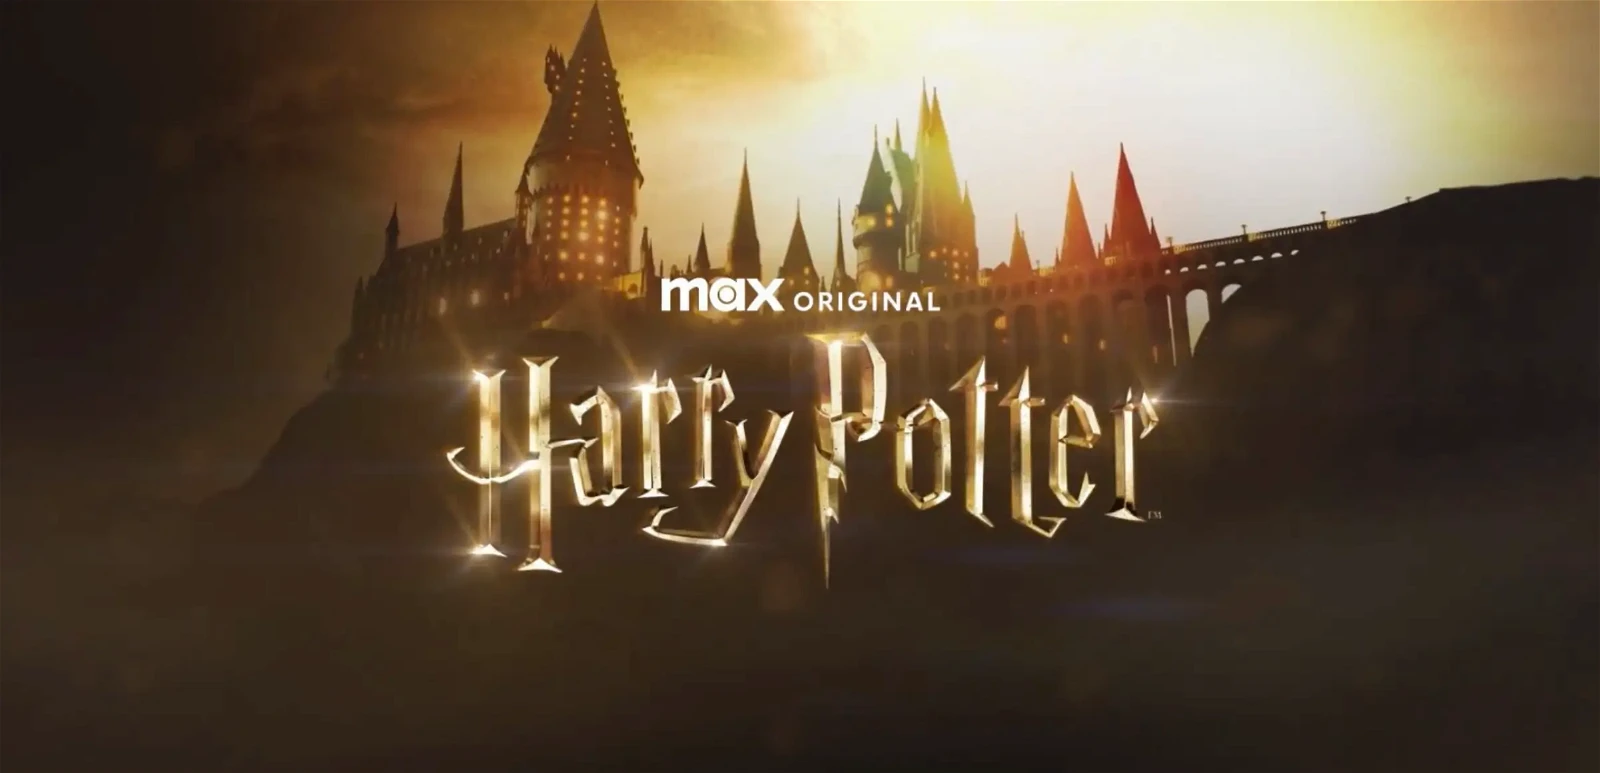 Max Originals' Harry Potter series 